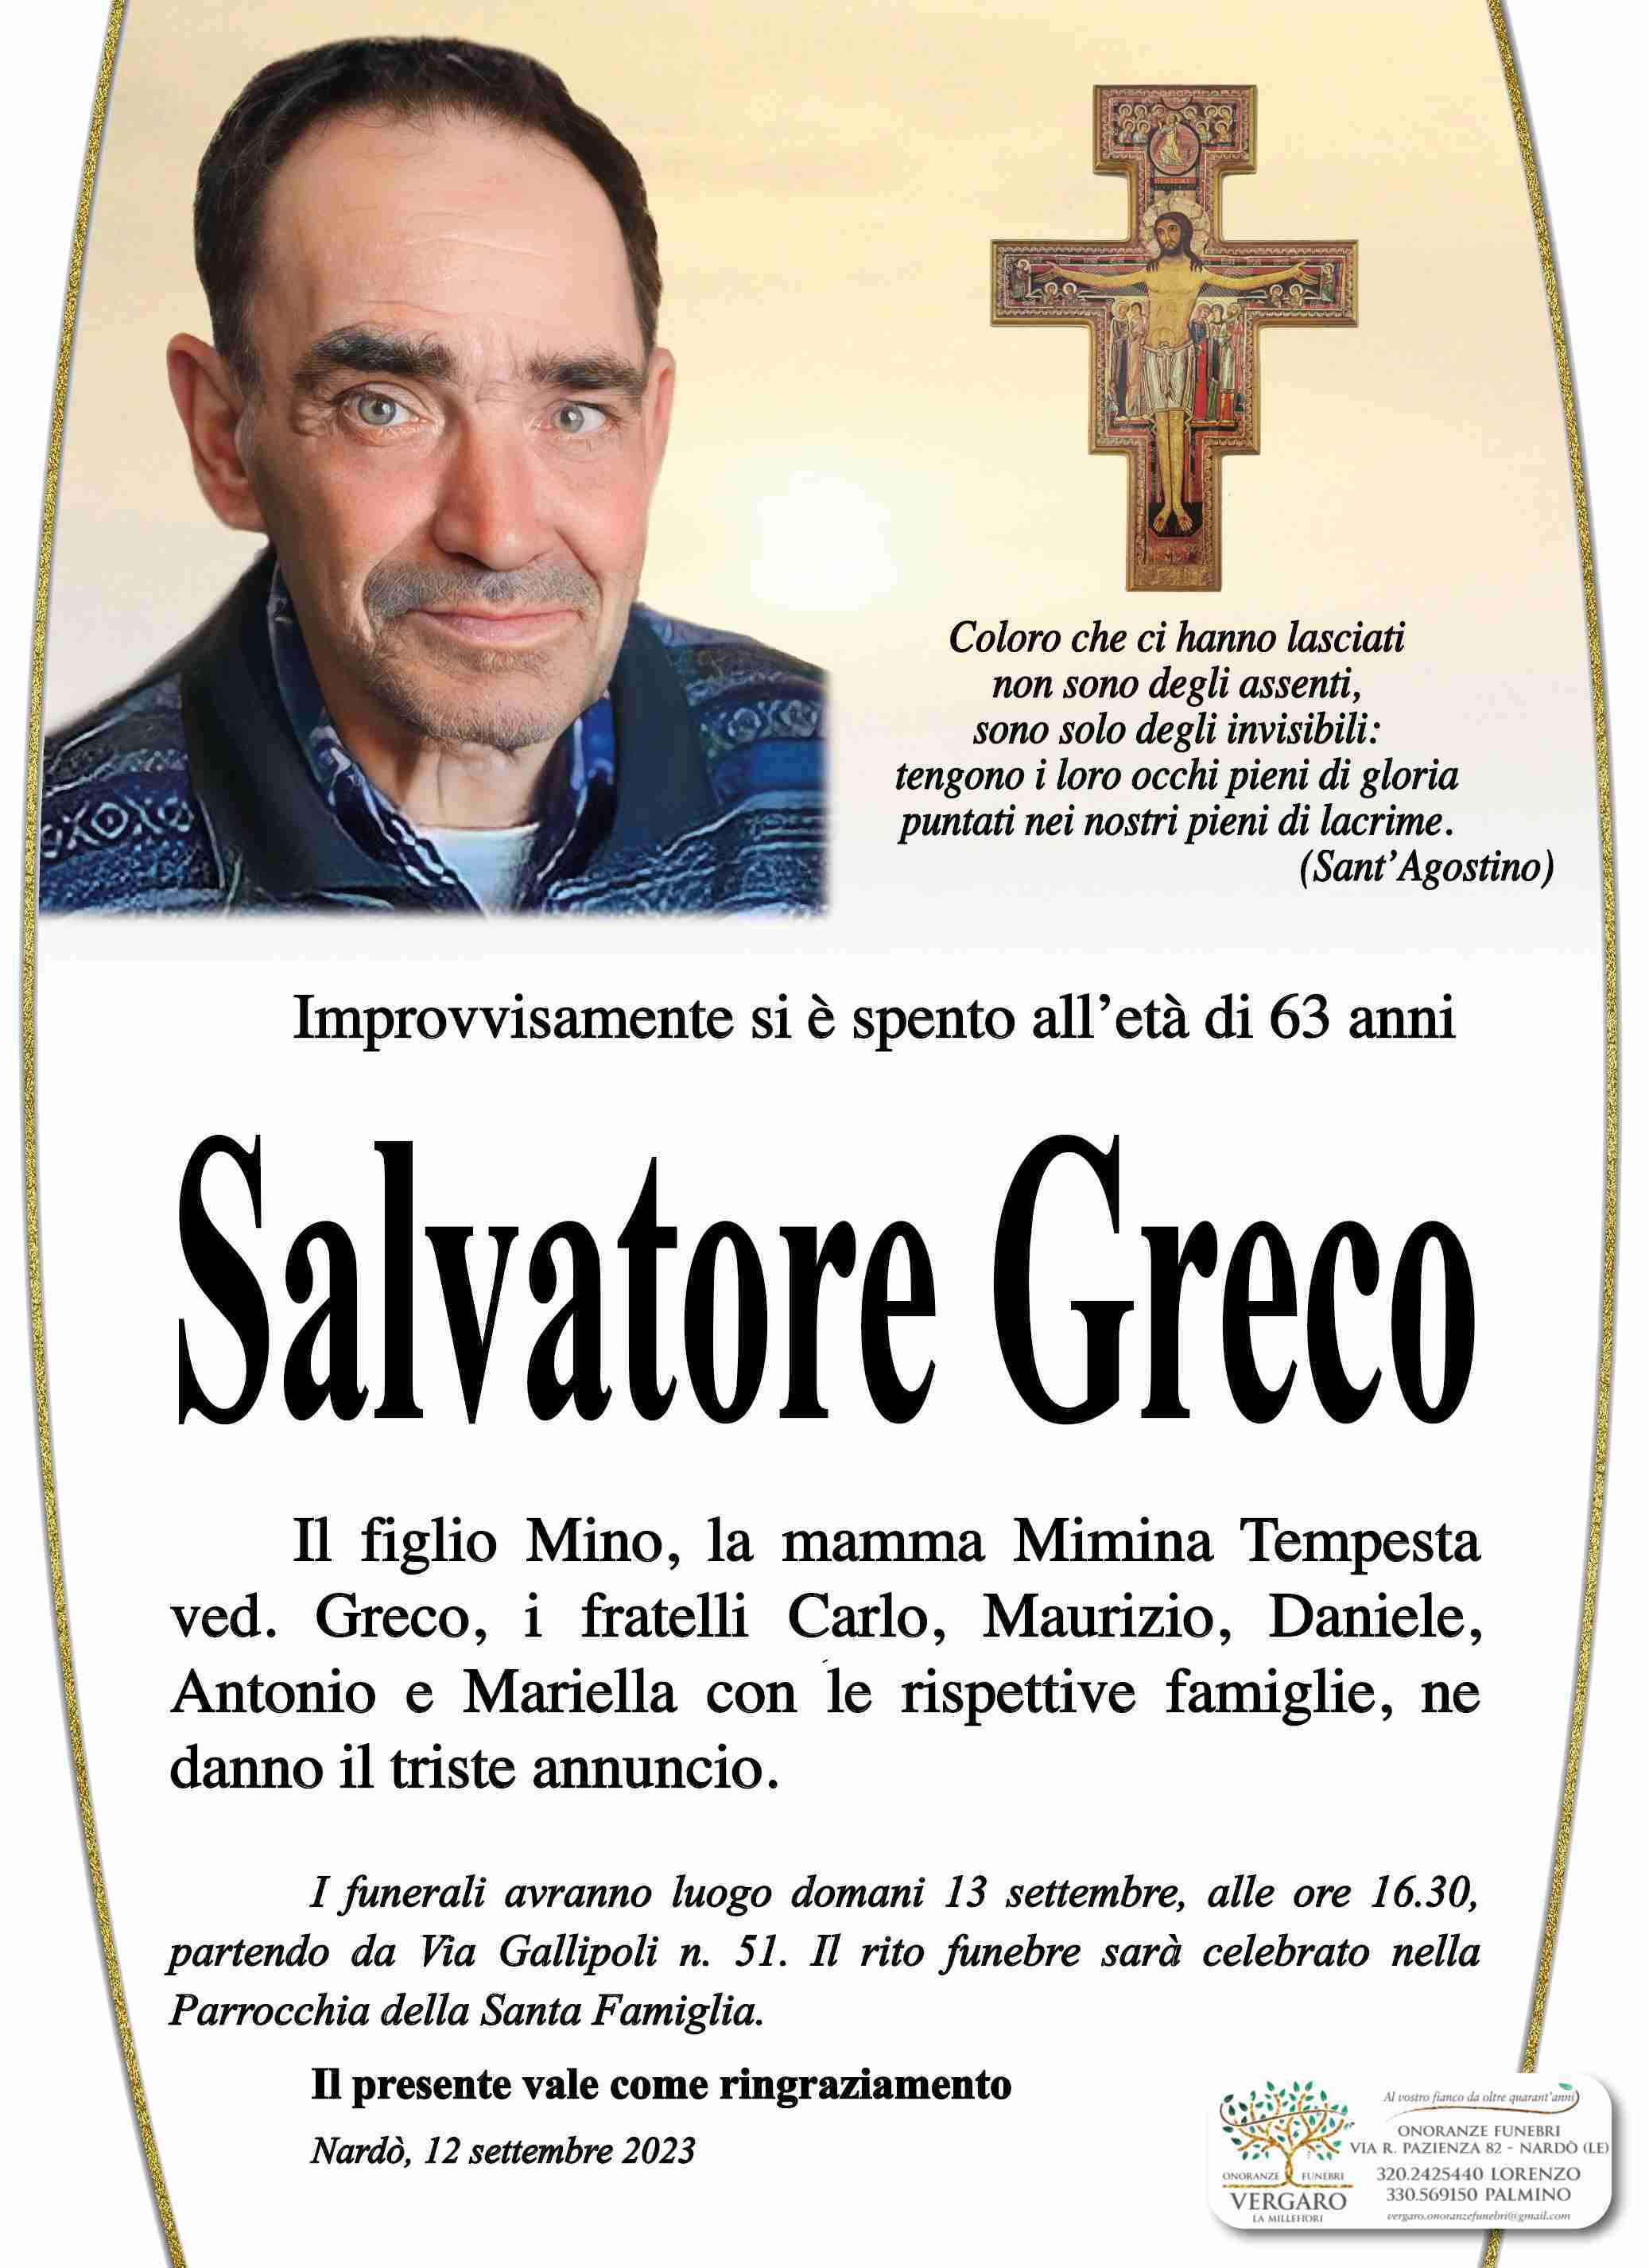 Salvatore Greco